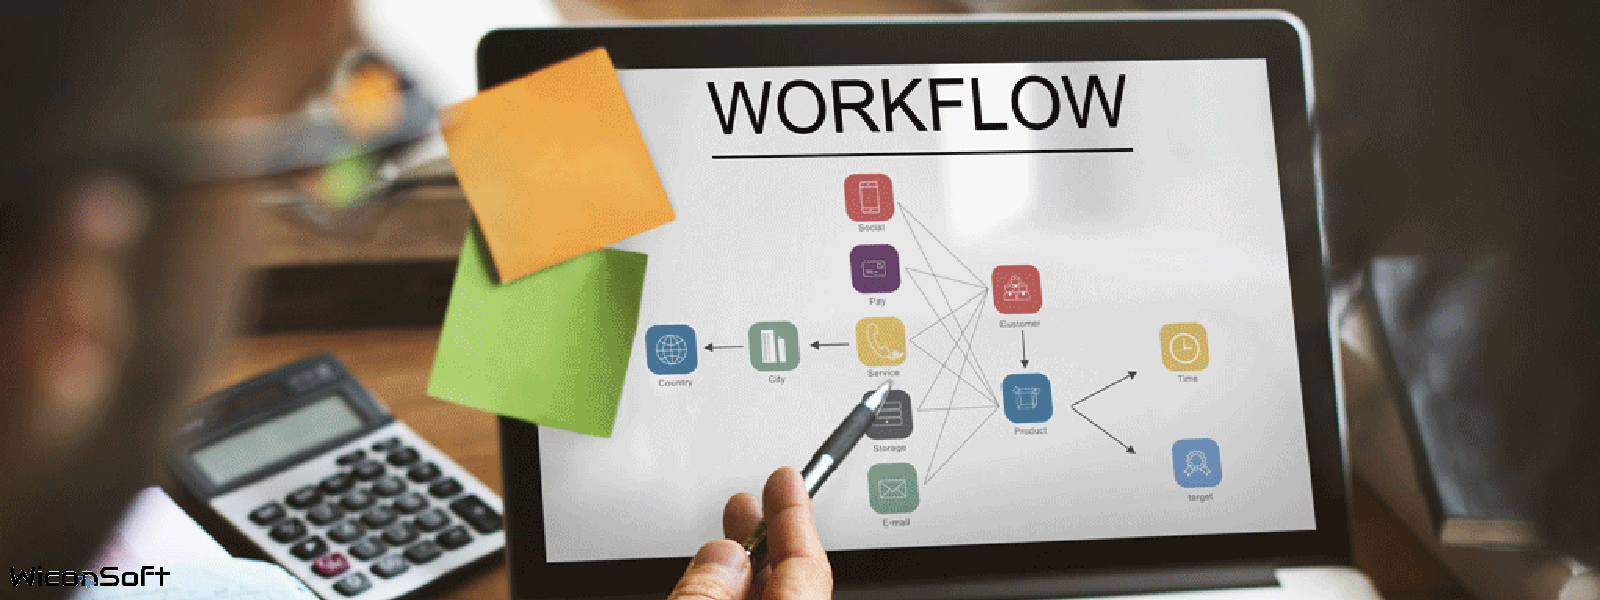 Workflow hvorfor er det vigtig og hvorfor kæde det sammen med økonomistyring